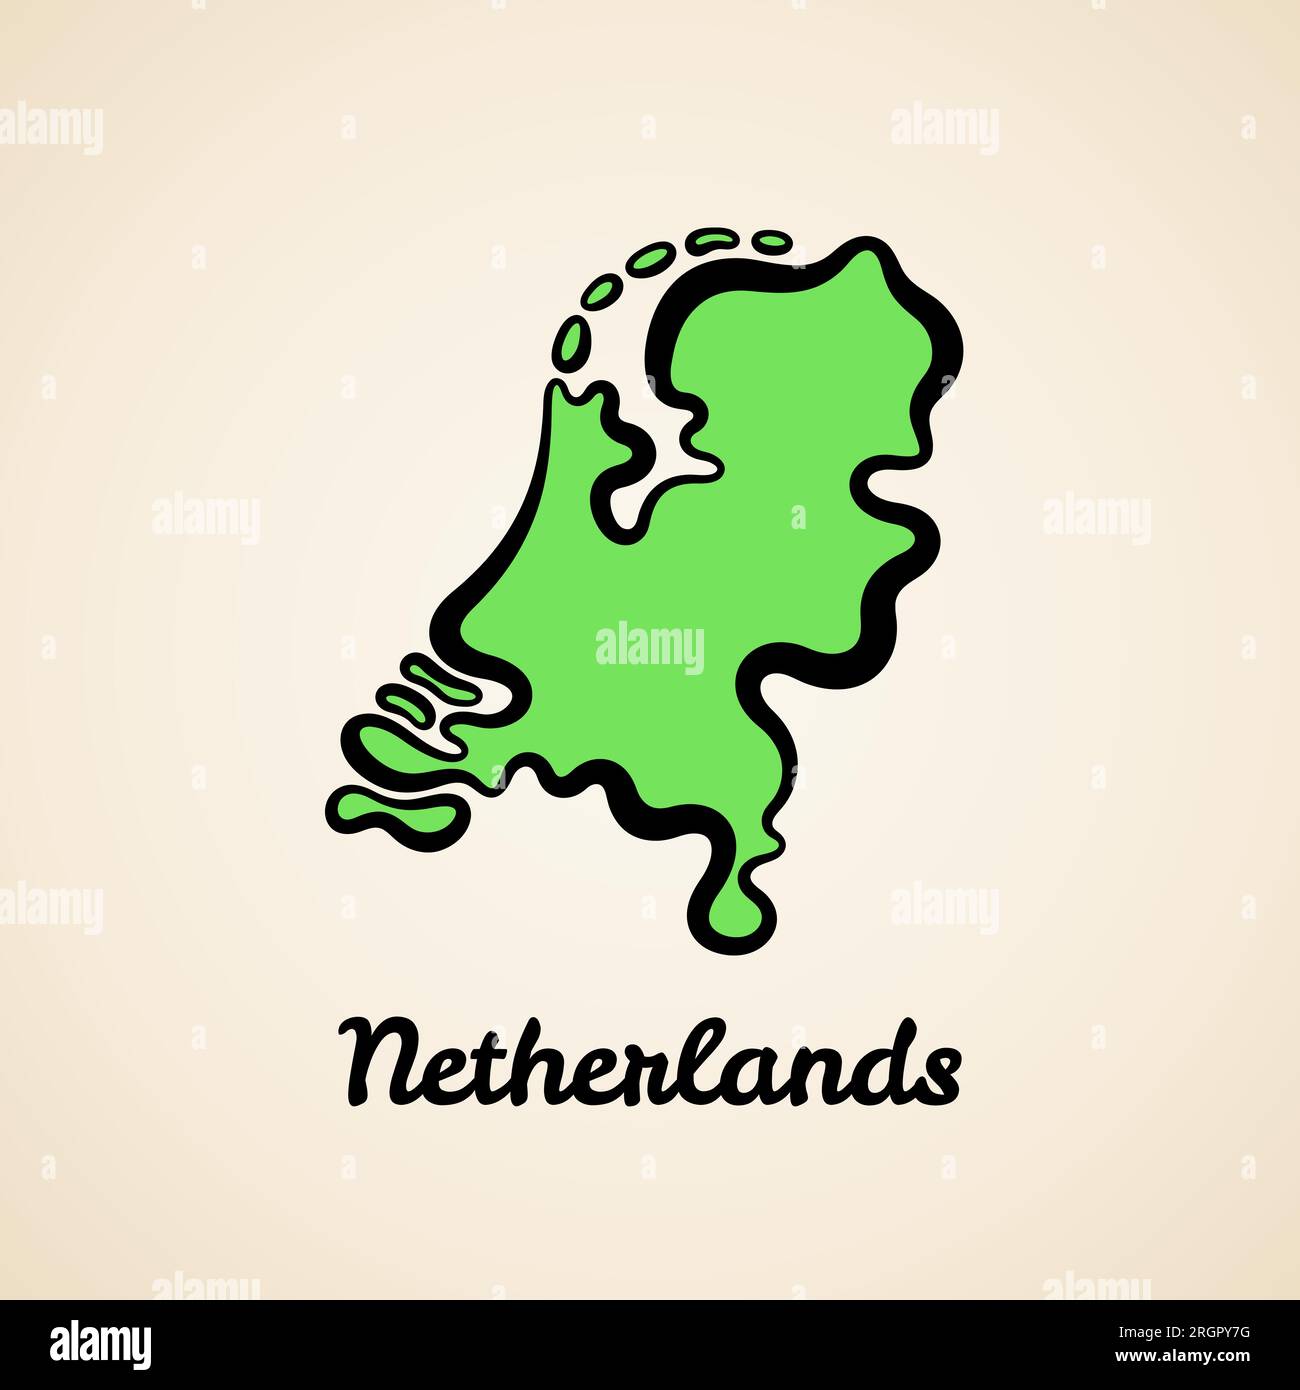 Grüne vereinfachte Karte der Niederlande mit schwarzer Umrandung. Stock Vektor